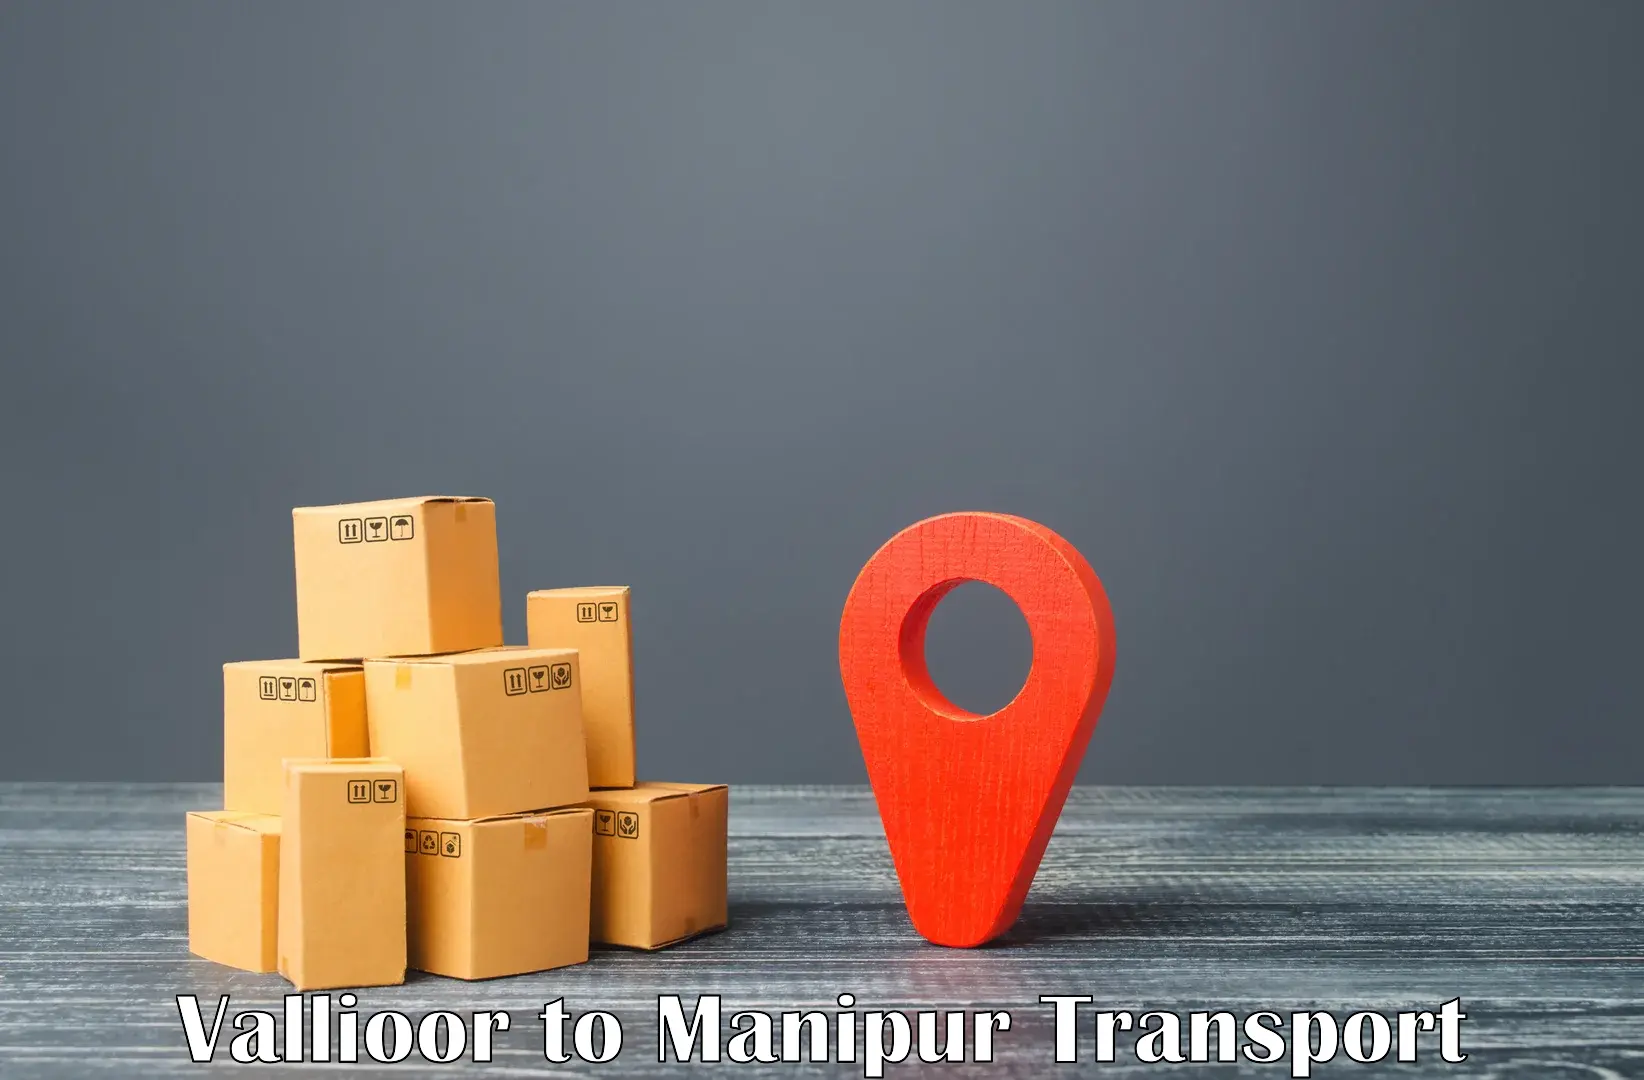 Nearest transport service Vallioor to Manipur